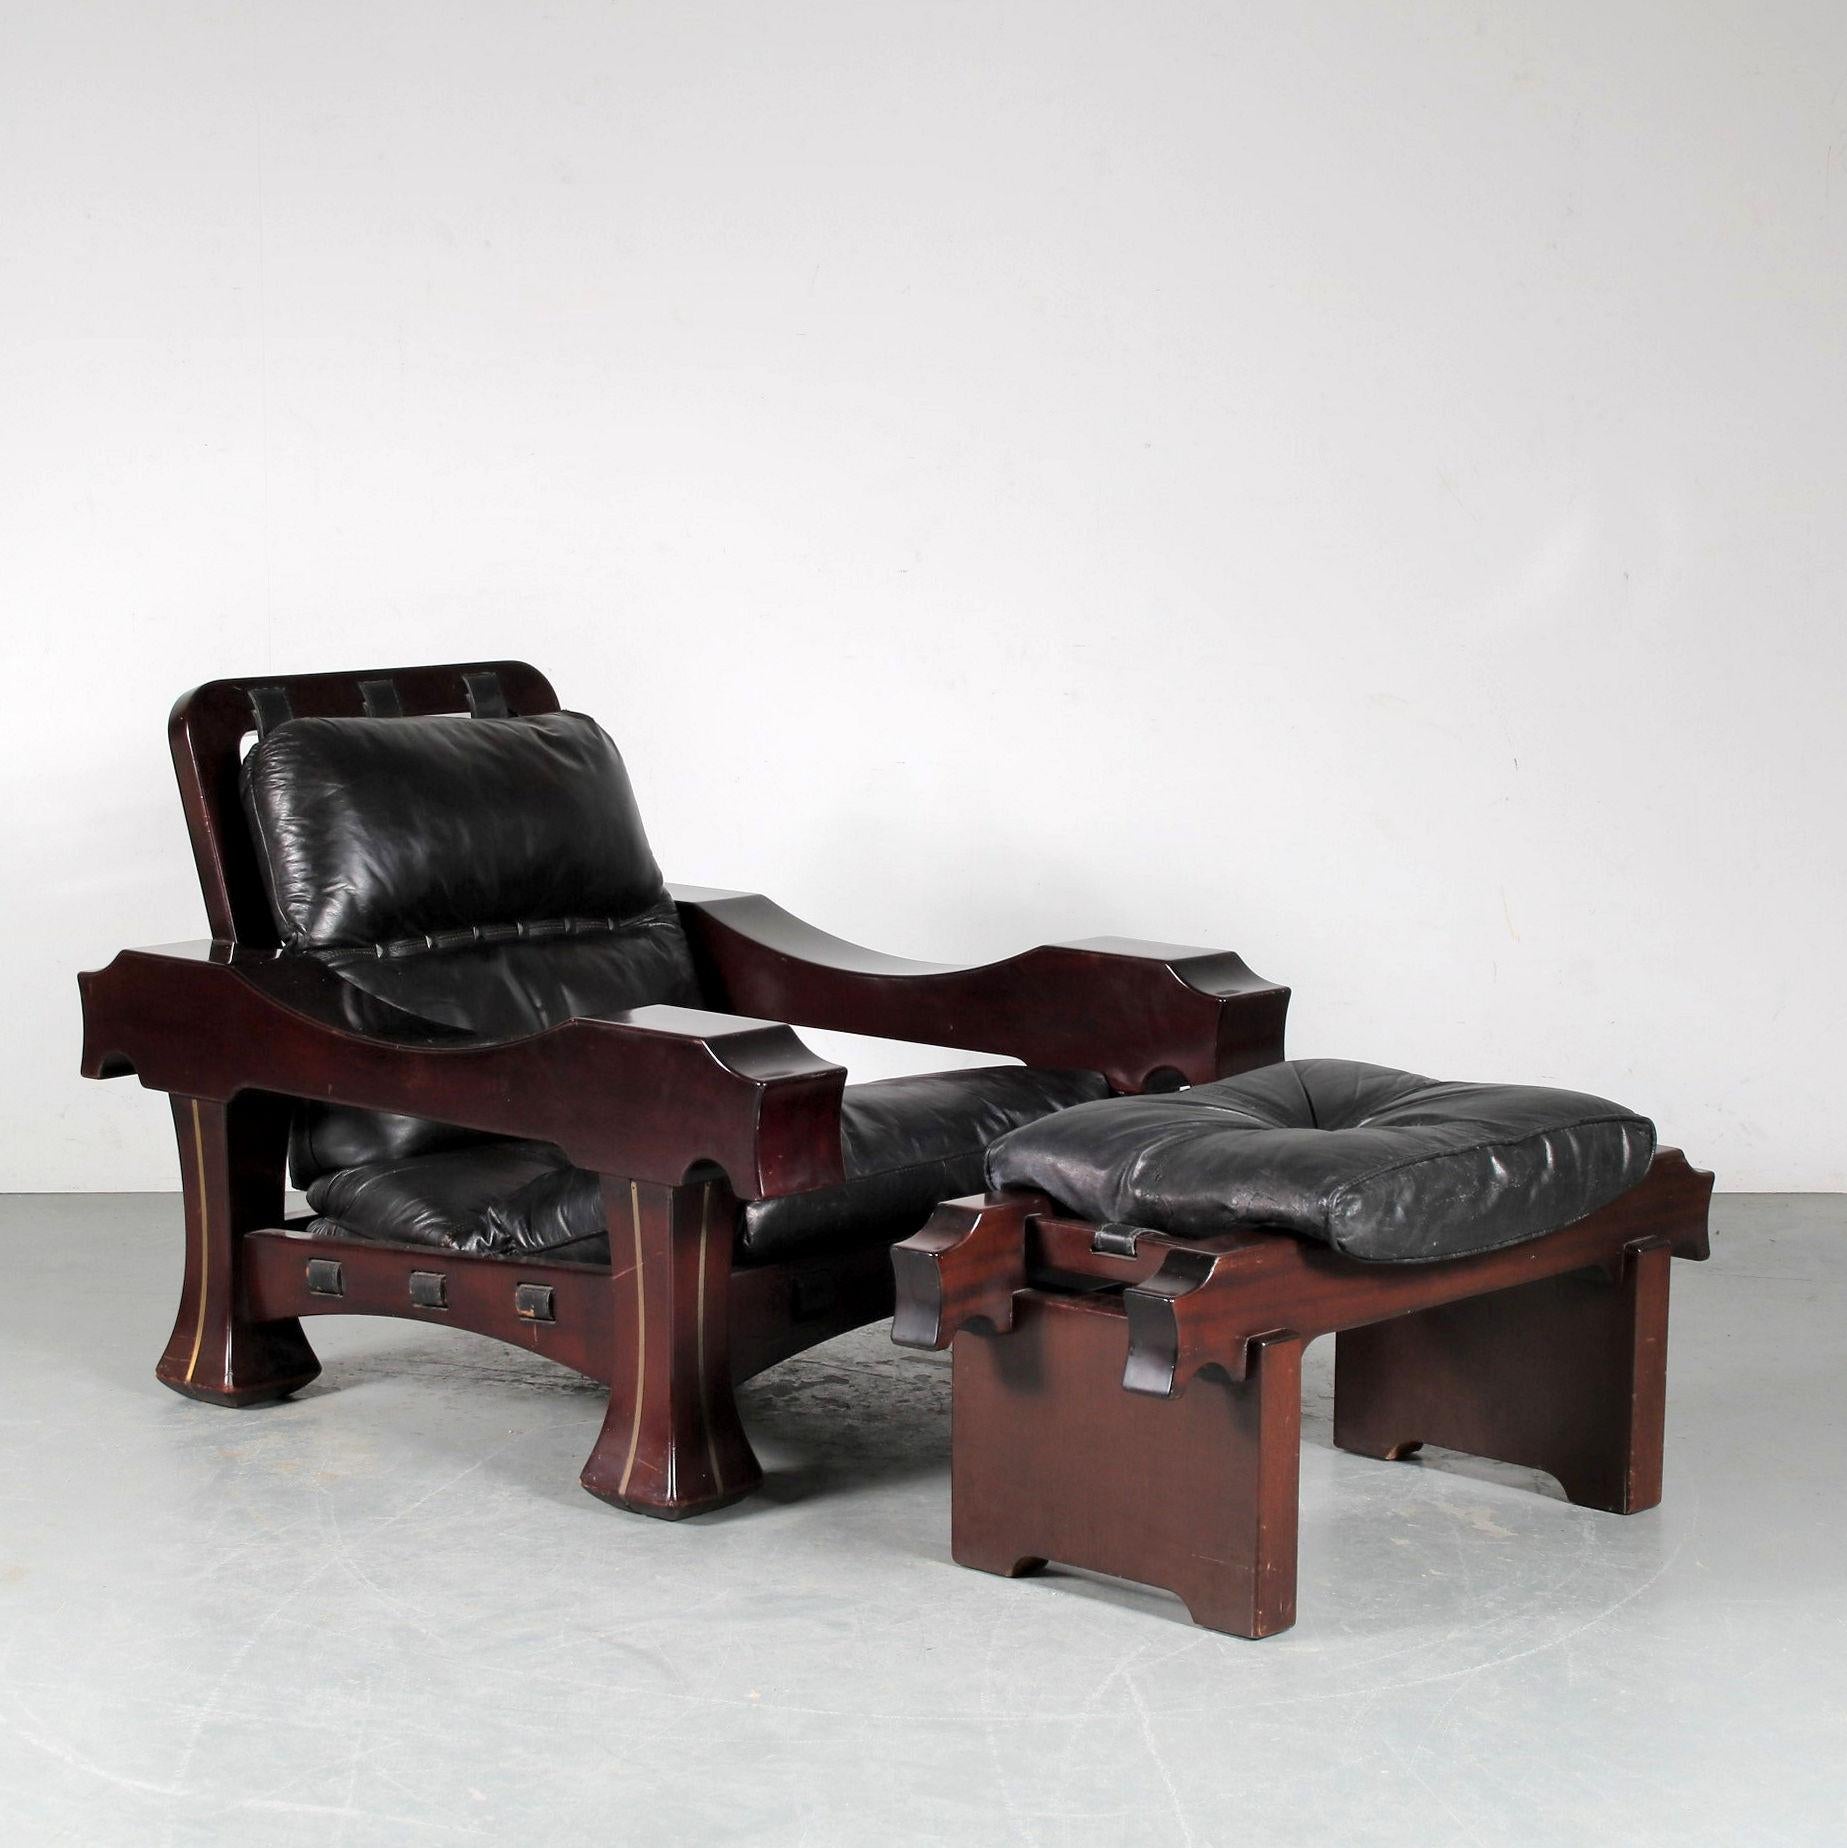 Une chaise longue accrocheuse conçue par Luciano Frigerio, fabriquée en Italie vers 1970.

La couleur brune profonde du bois d'acajou convient parfaitement à cet ensemble qui attire le regard. Les coussins de la chaise et du tabouret sont tous